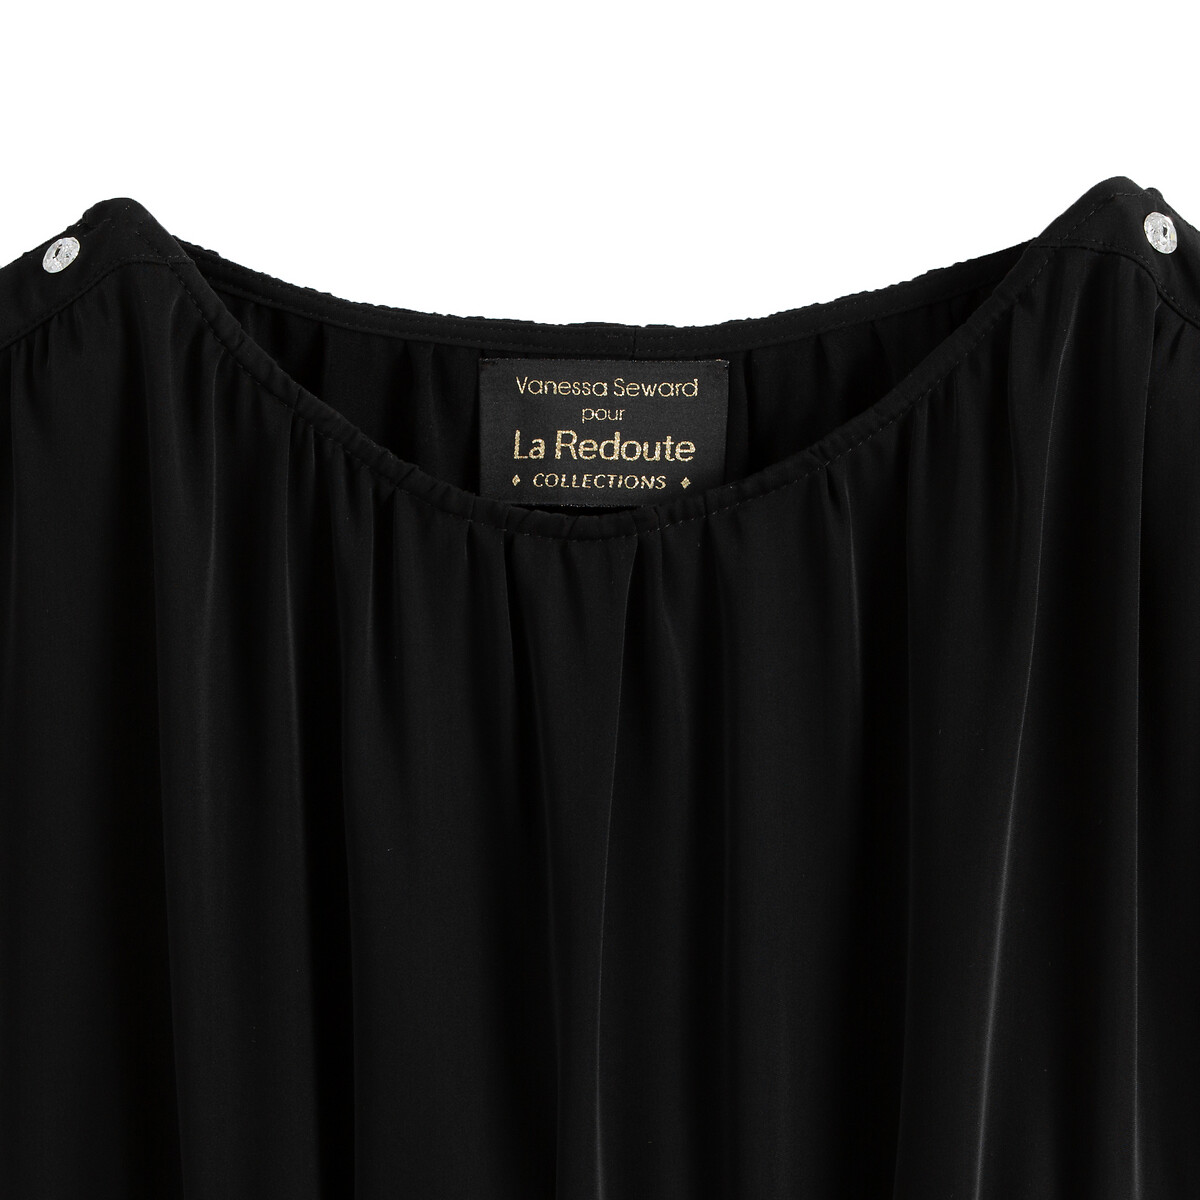 Платье La Redoute La Redoute 48 (FR) - 54 (RUS) черный, размер 48 (FR) - 54 (RUS) La Redoute 48 (FR) - 54 (RUS) черный - фото 2